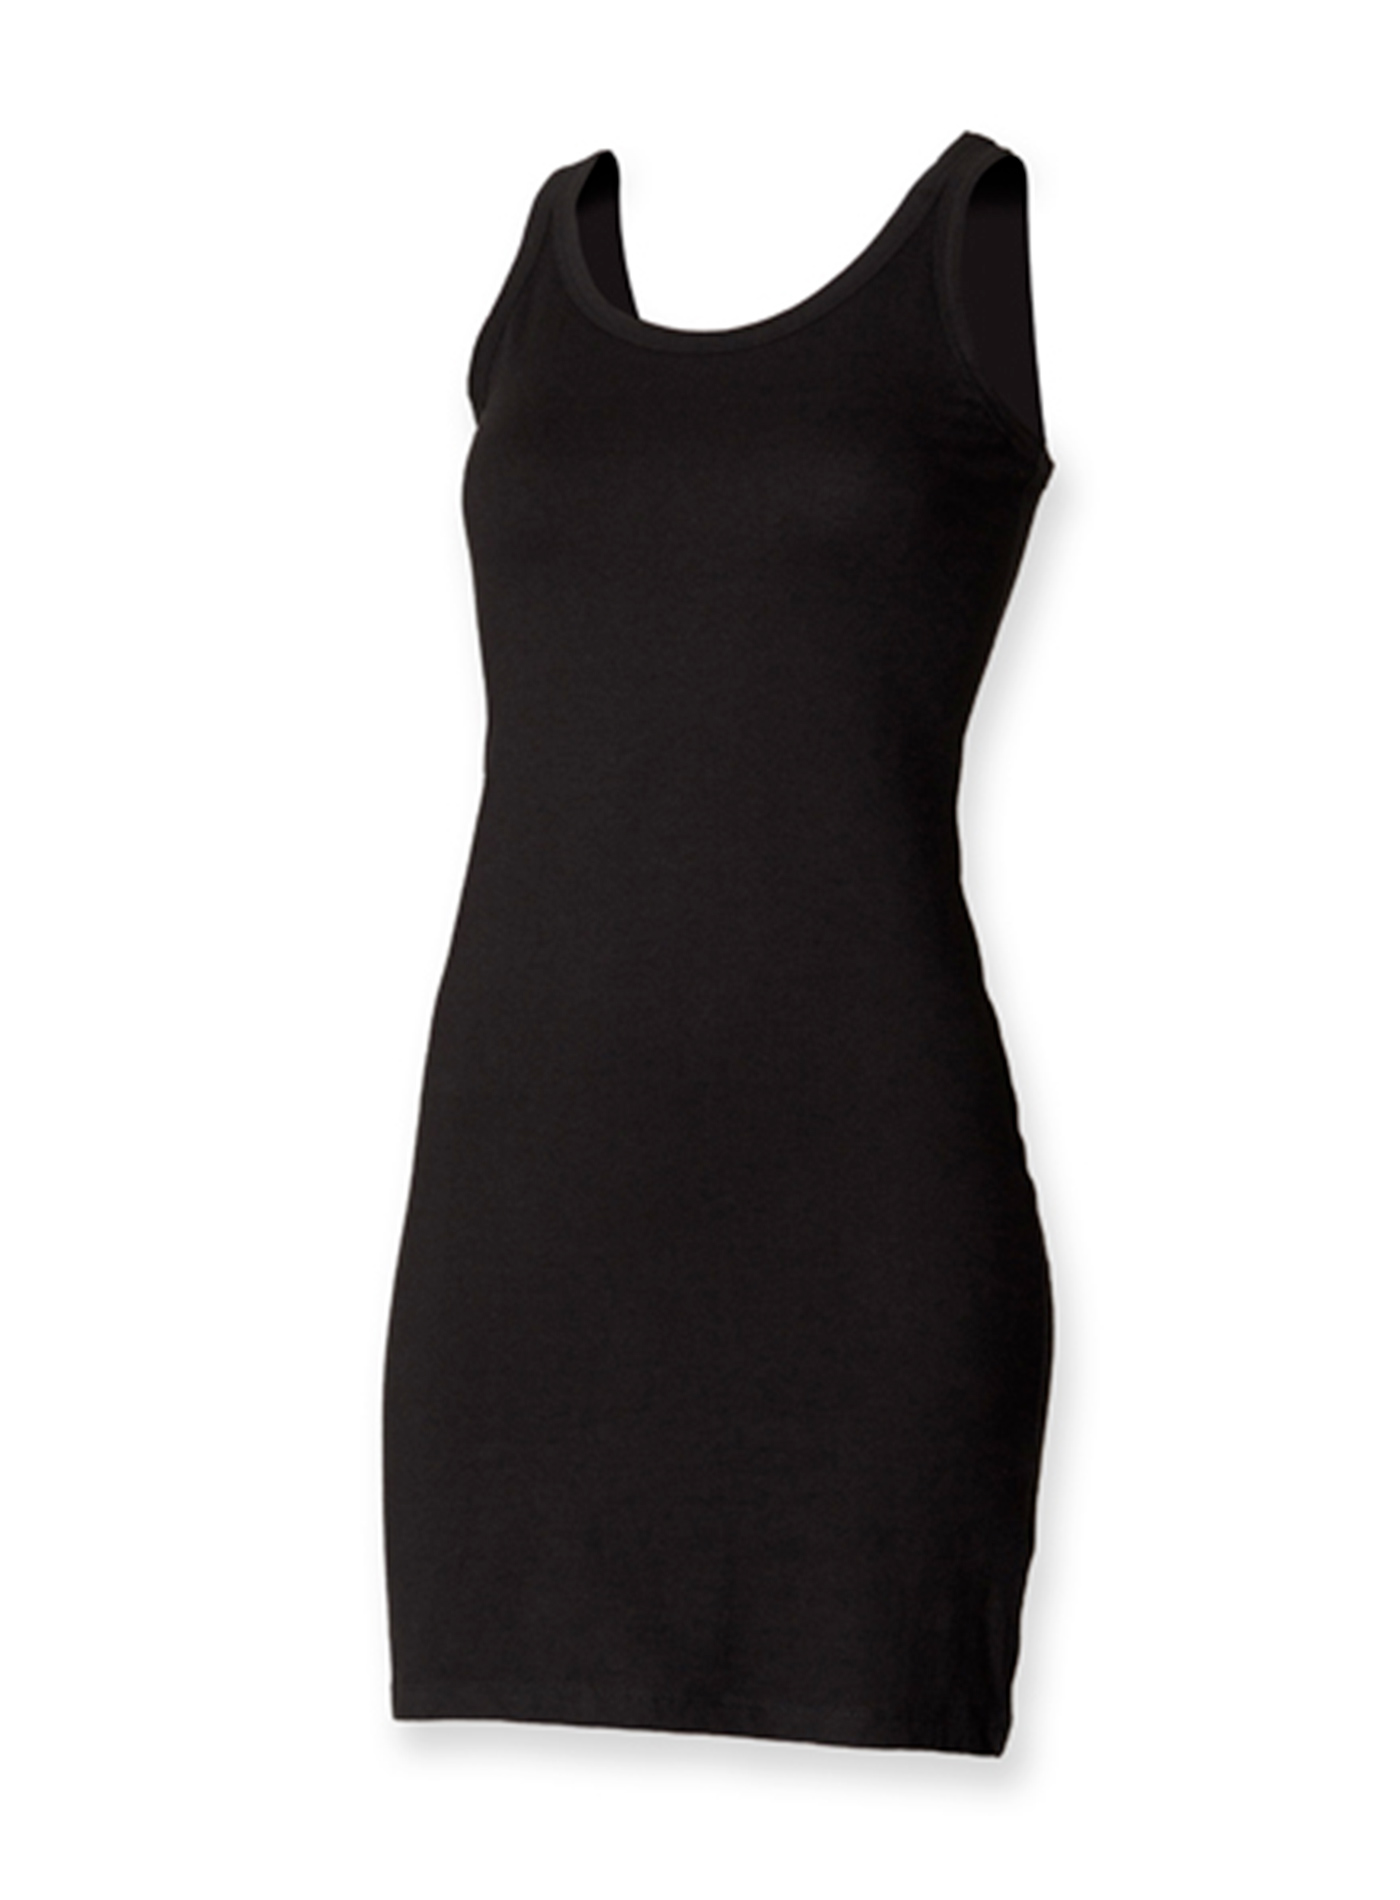 Dámské strečové šaty Skinnifit - černá S